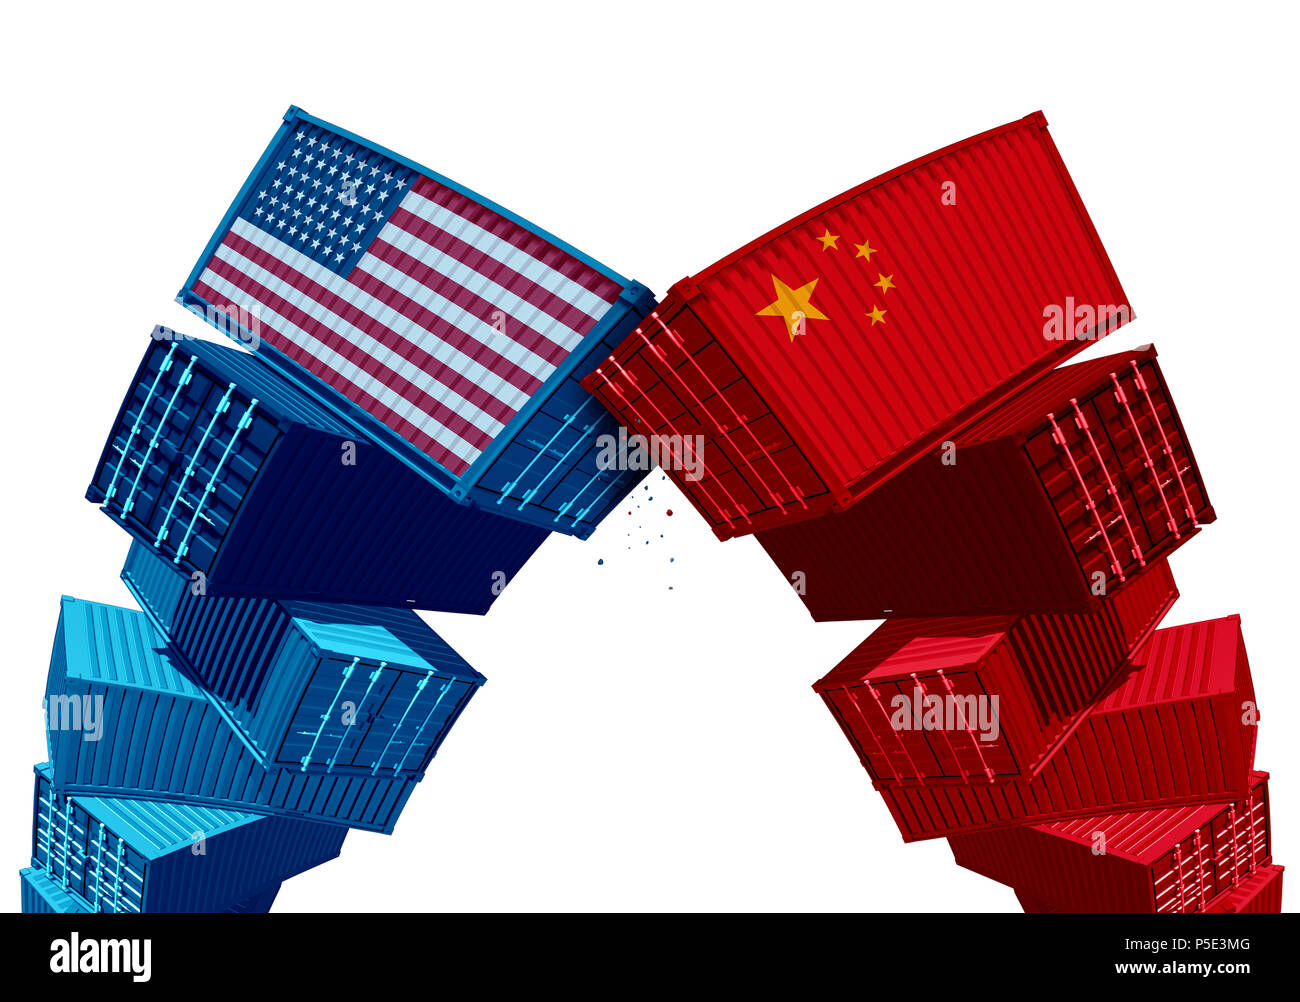 Uns China tarif Streit Handelskrieg und die Vereinigten Staaten haben oder Amerikanische wie zwei Gruppen von gegnerischen Cargo Container als wirtschaftliche Besteuerung Konflikt. Stockfoto